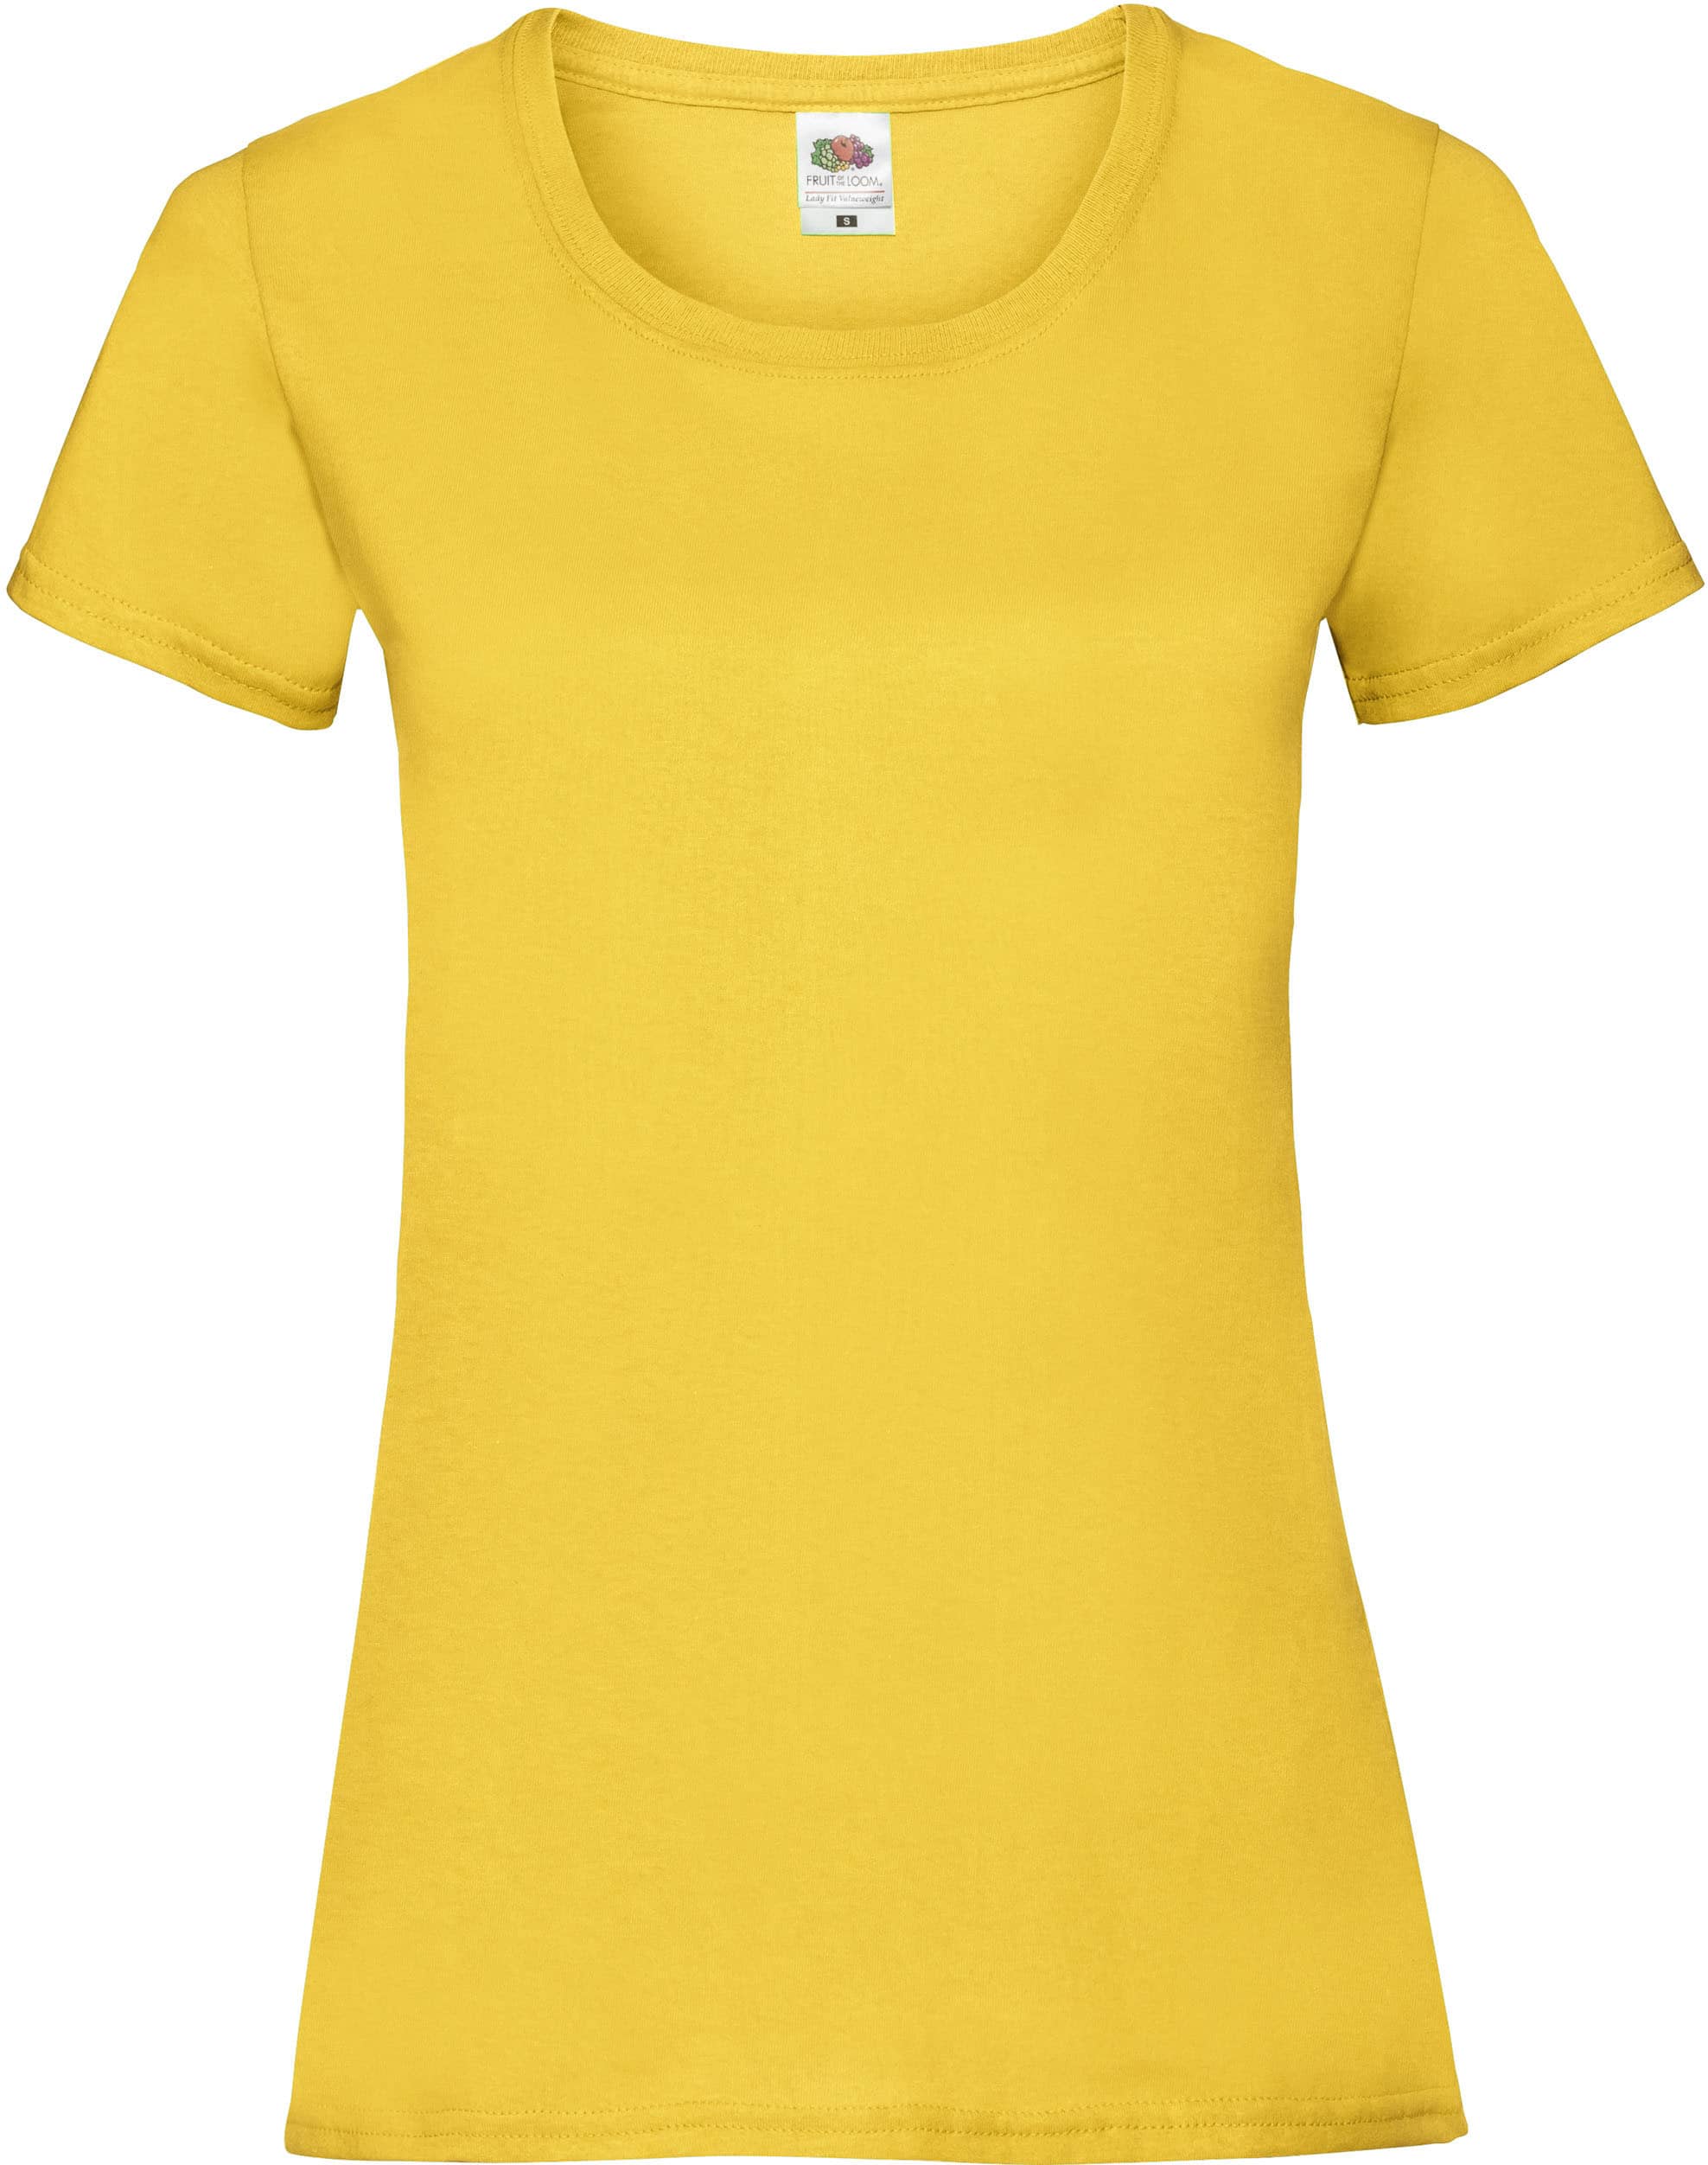 camiseta_personalizada_sc61372_amarillo (1)